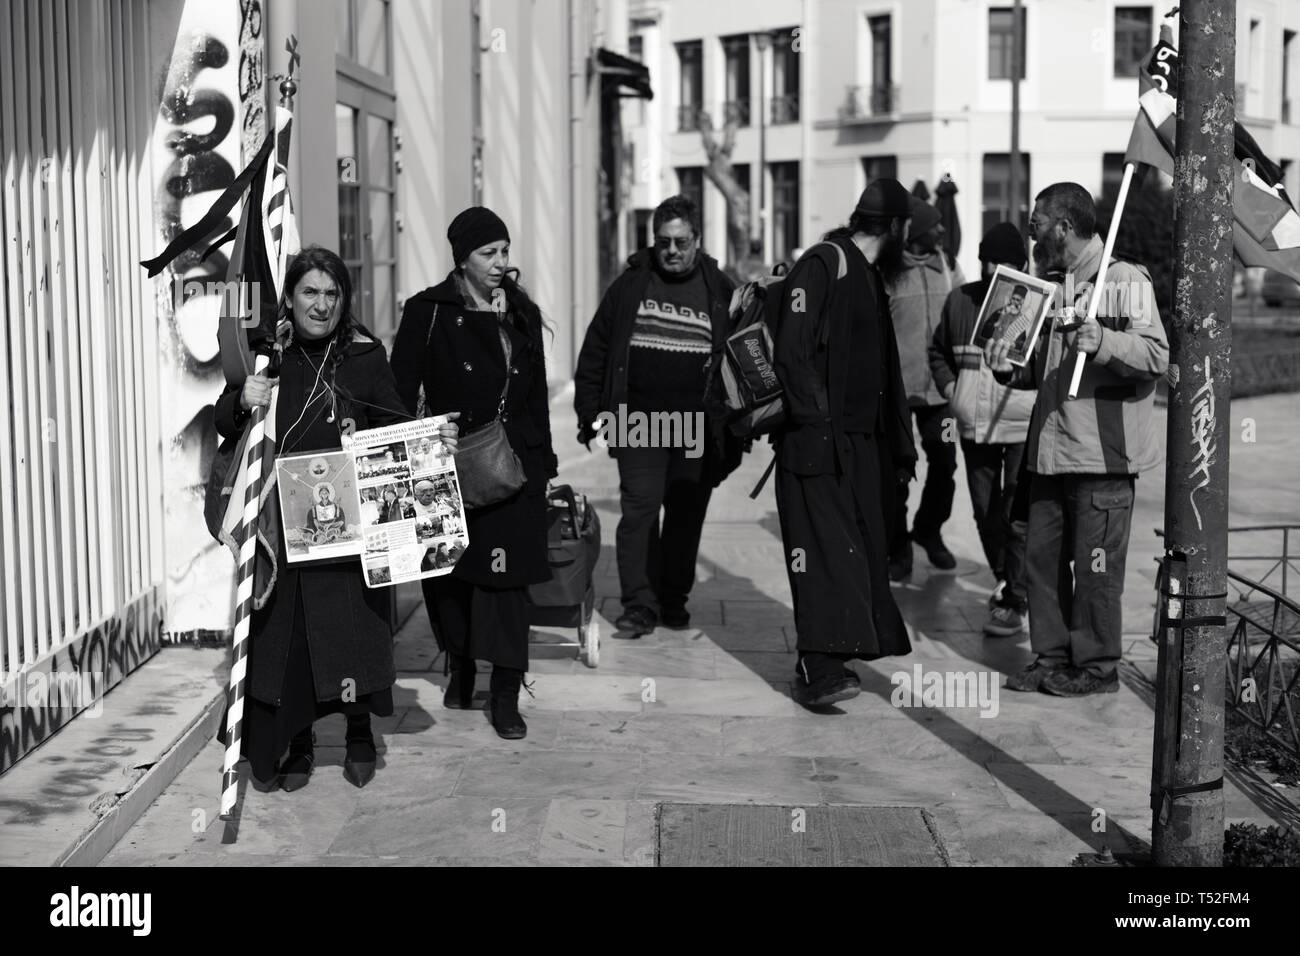 Religiöse Menschen demonstrieren, Athen, Griechenland Stockfoto